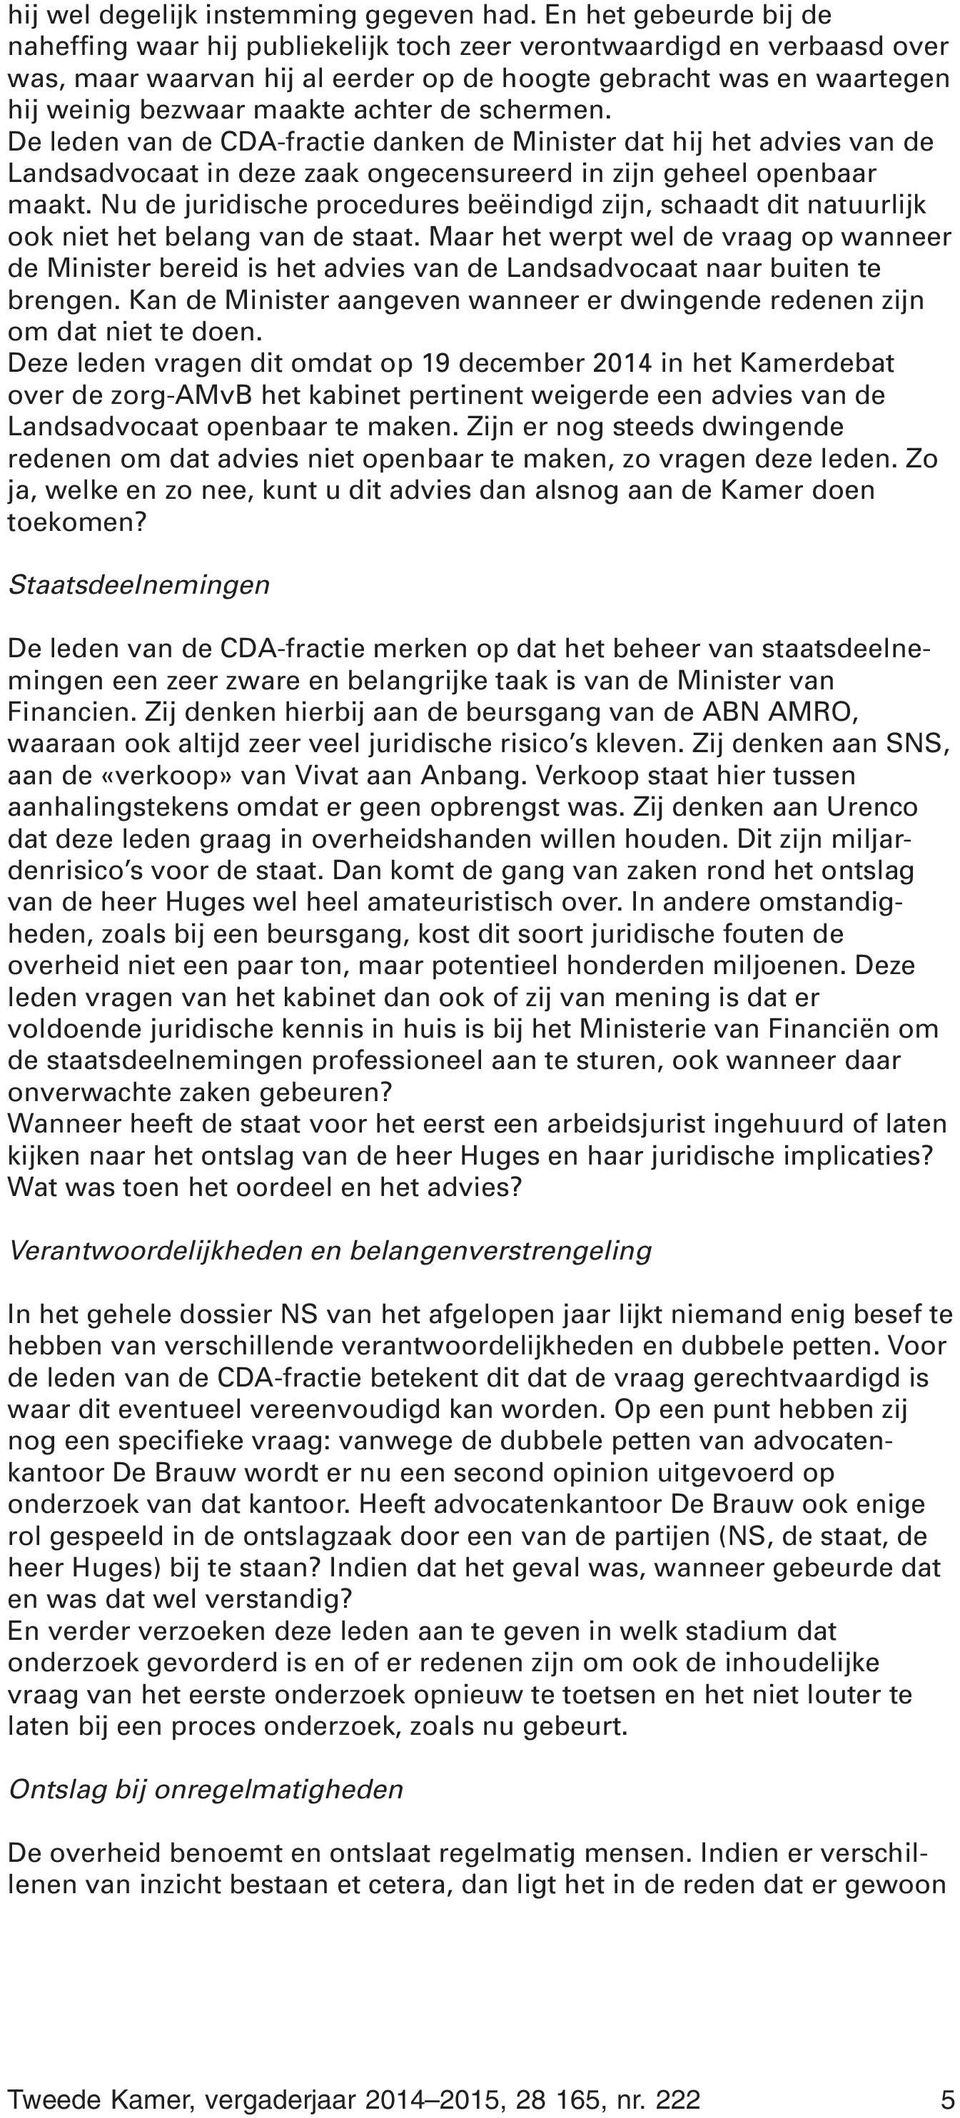 achter de schermen. De leden van de CDA-fractie danken de Minister dat hij het advies van de Landsadvocaat in deze zaak ongecensureerd in zijn geheel openbaar maakt.